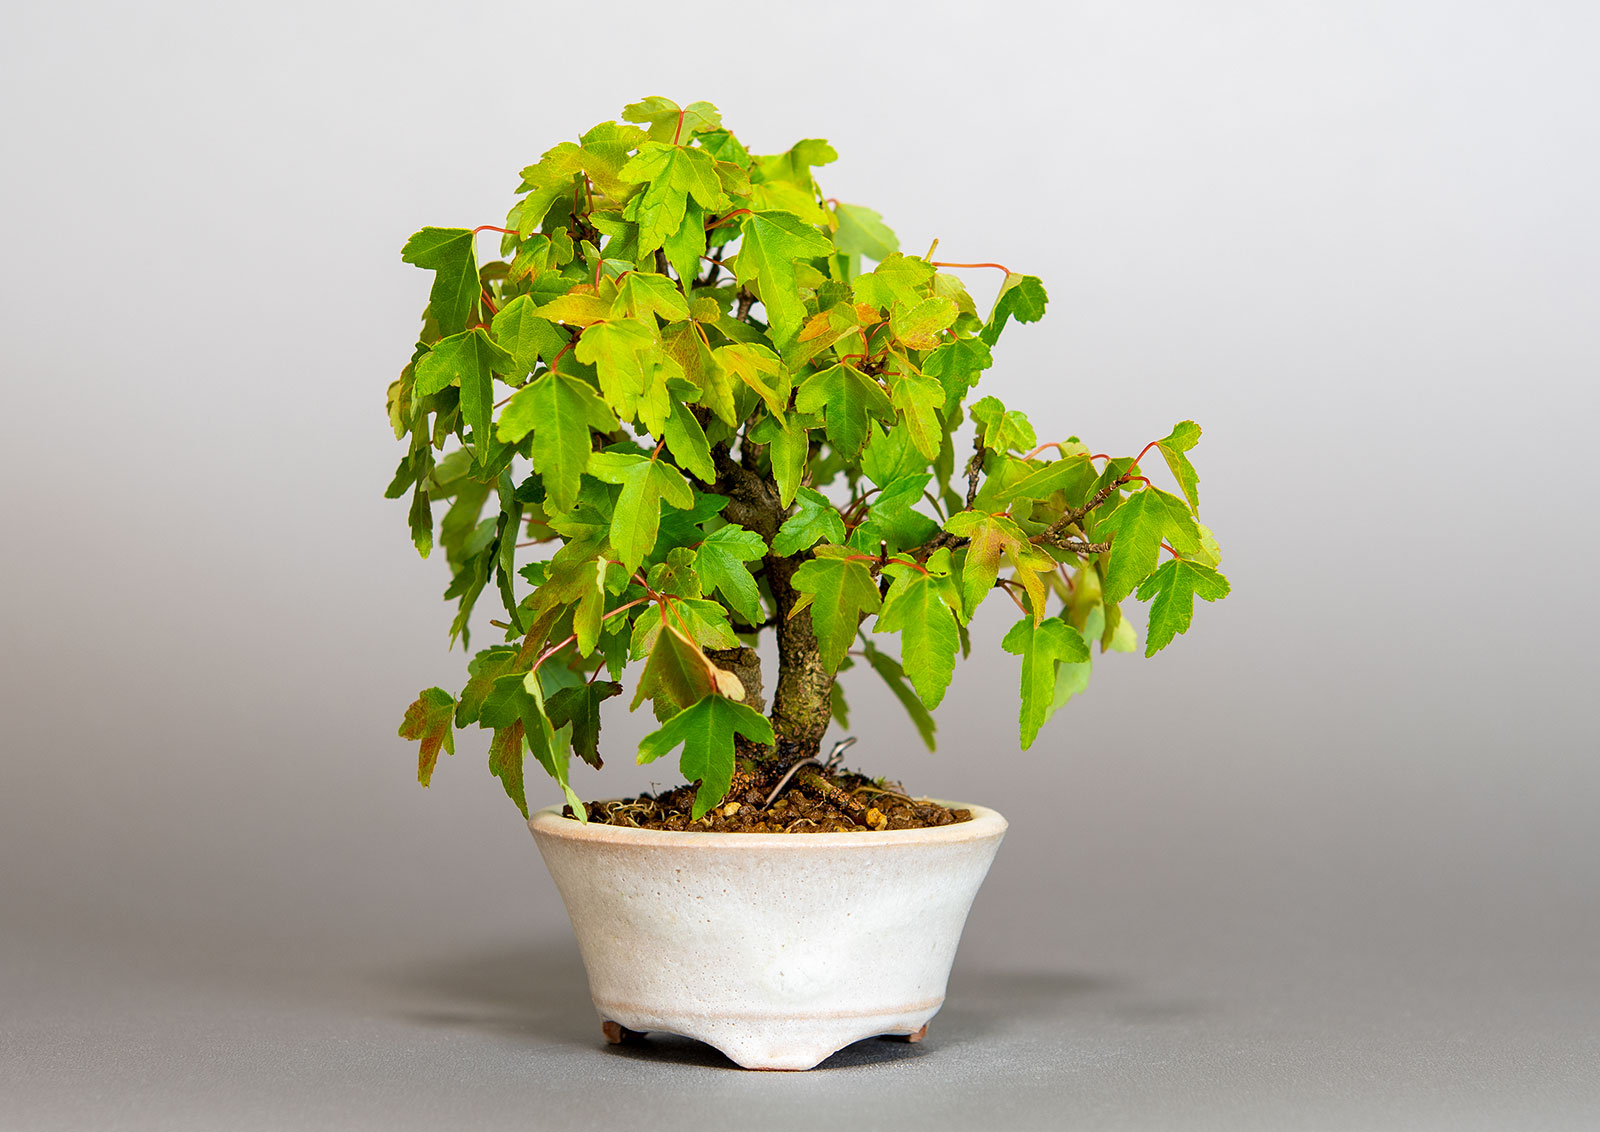 トウカエデ-T2-1（とうかえで・唐楓）雑木盆栽の販売と育て方・作り方・Acer buergerianum bonsai